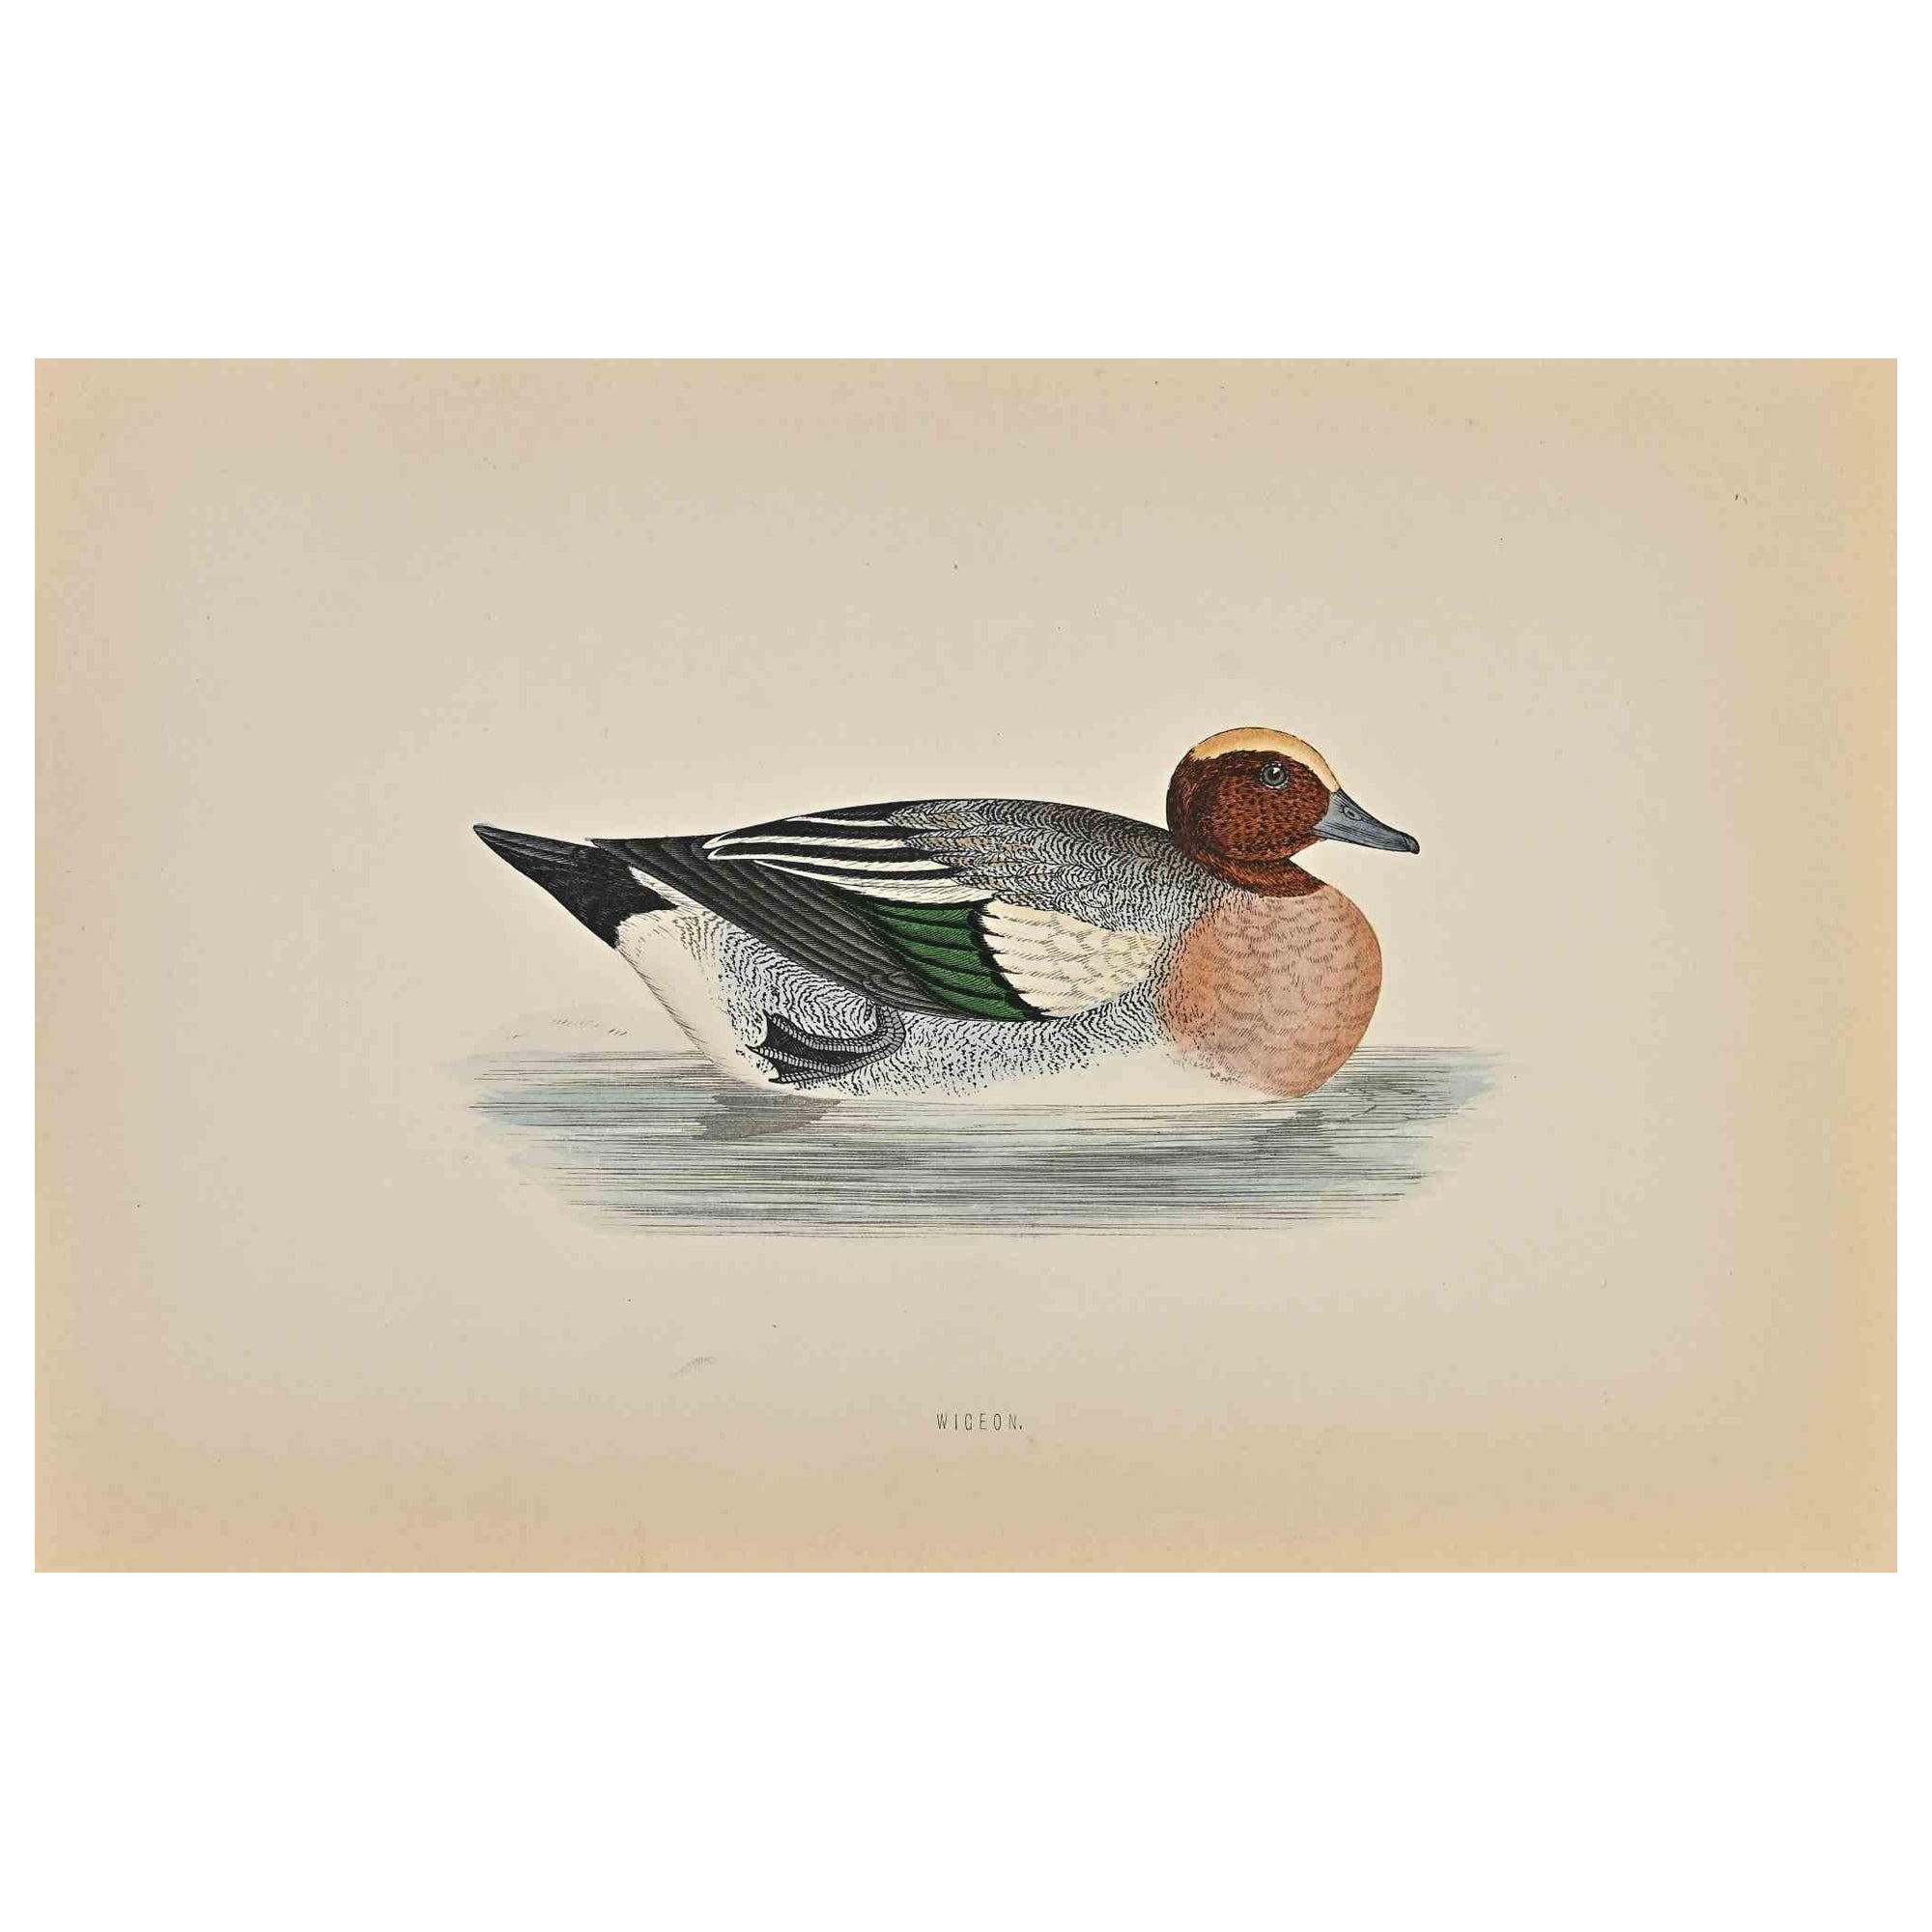 Impression sur bois wigeon d'Alexander Francis Lydon  - 1870